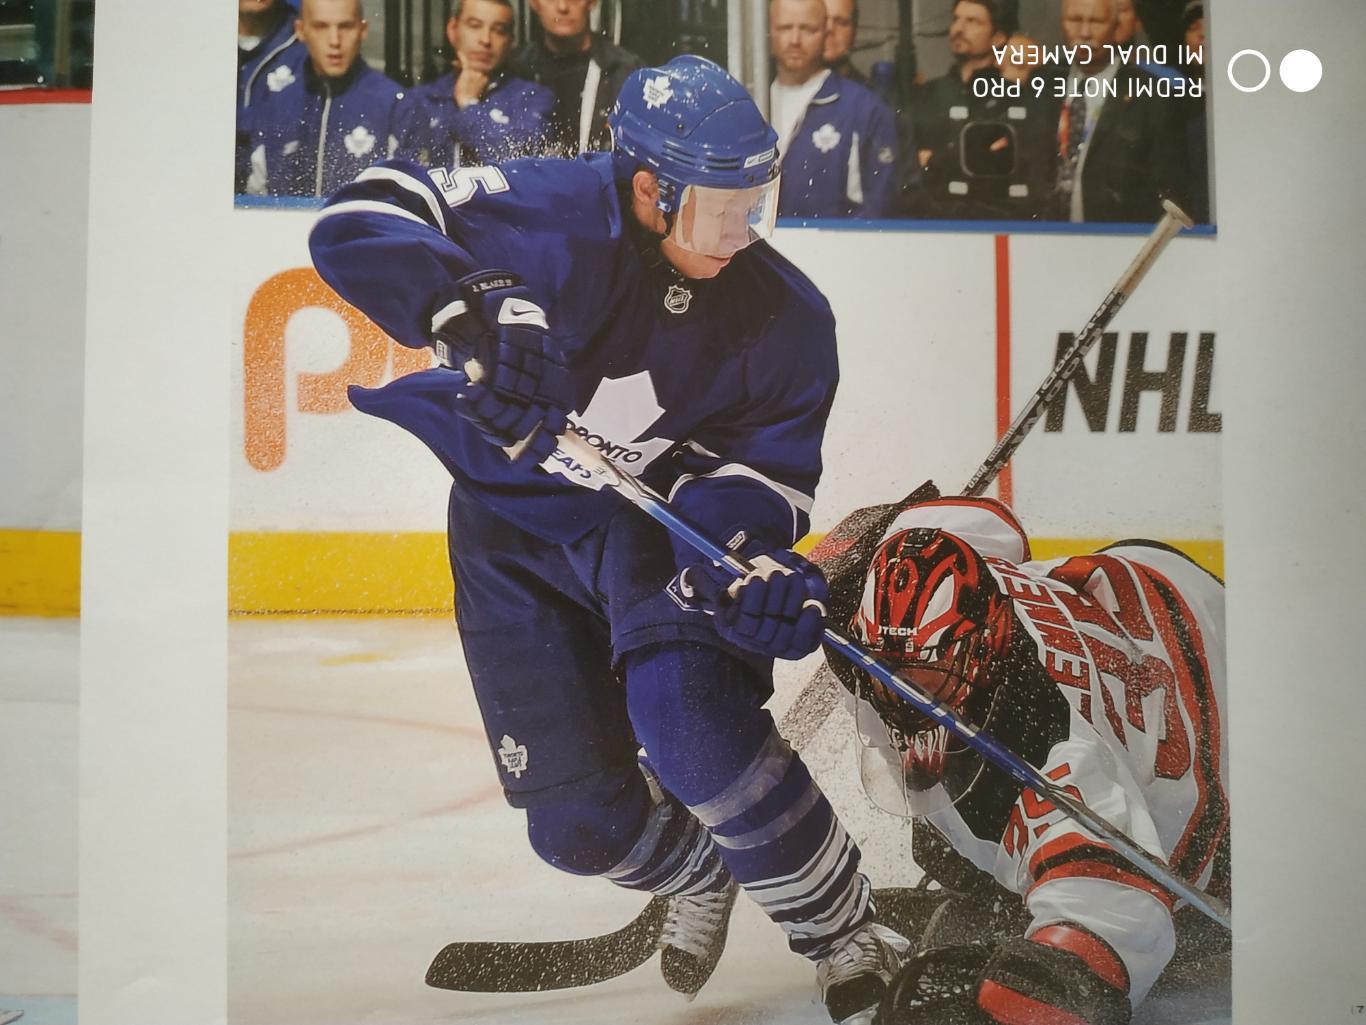 ХОККЕЙ ПРОГРАММА АЛЬБОМ НХЛ THE NHL HOCKEY YEAR IN PHOTOGRAPHS REFLECTIONS 2009 5